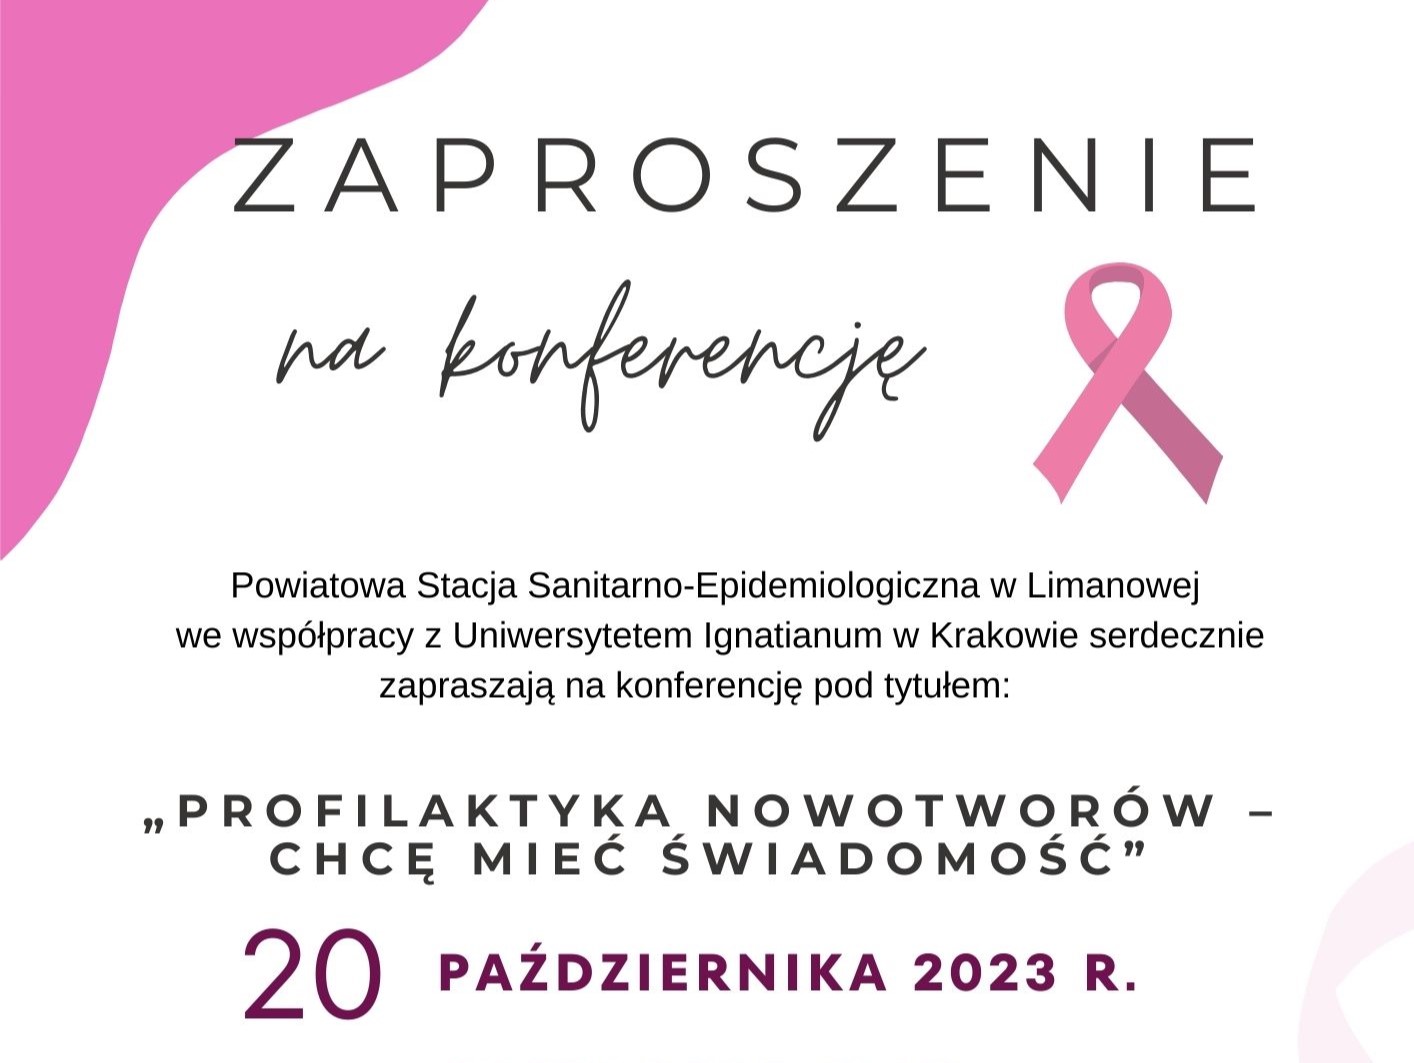 biały plakat różową wstążką i informacjami